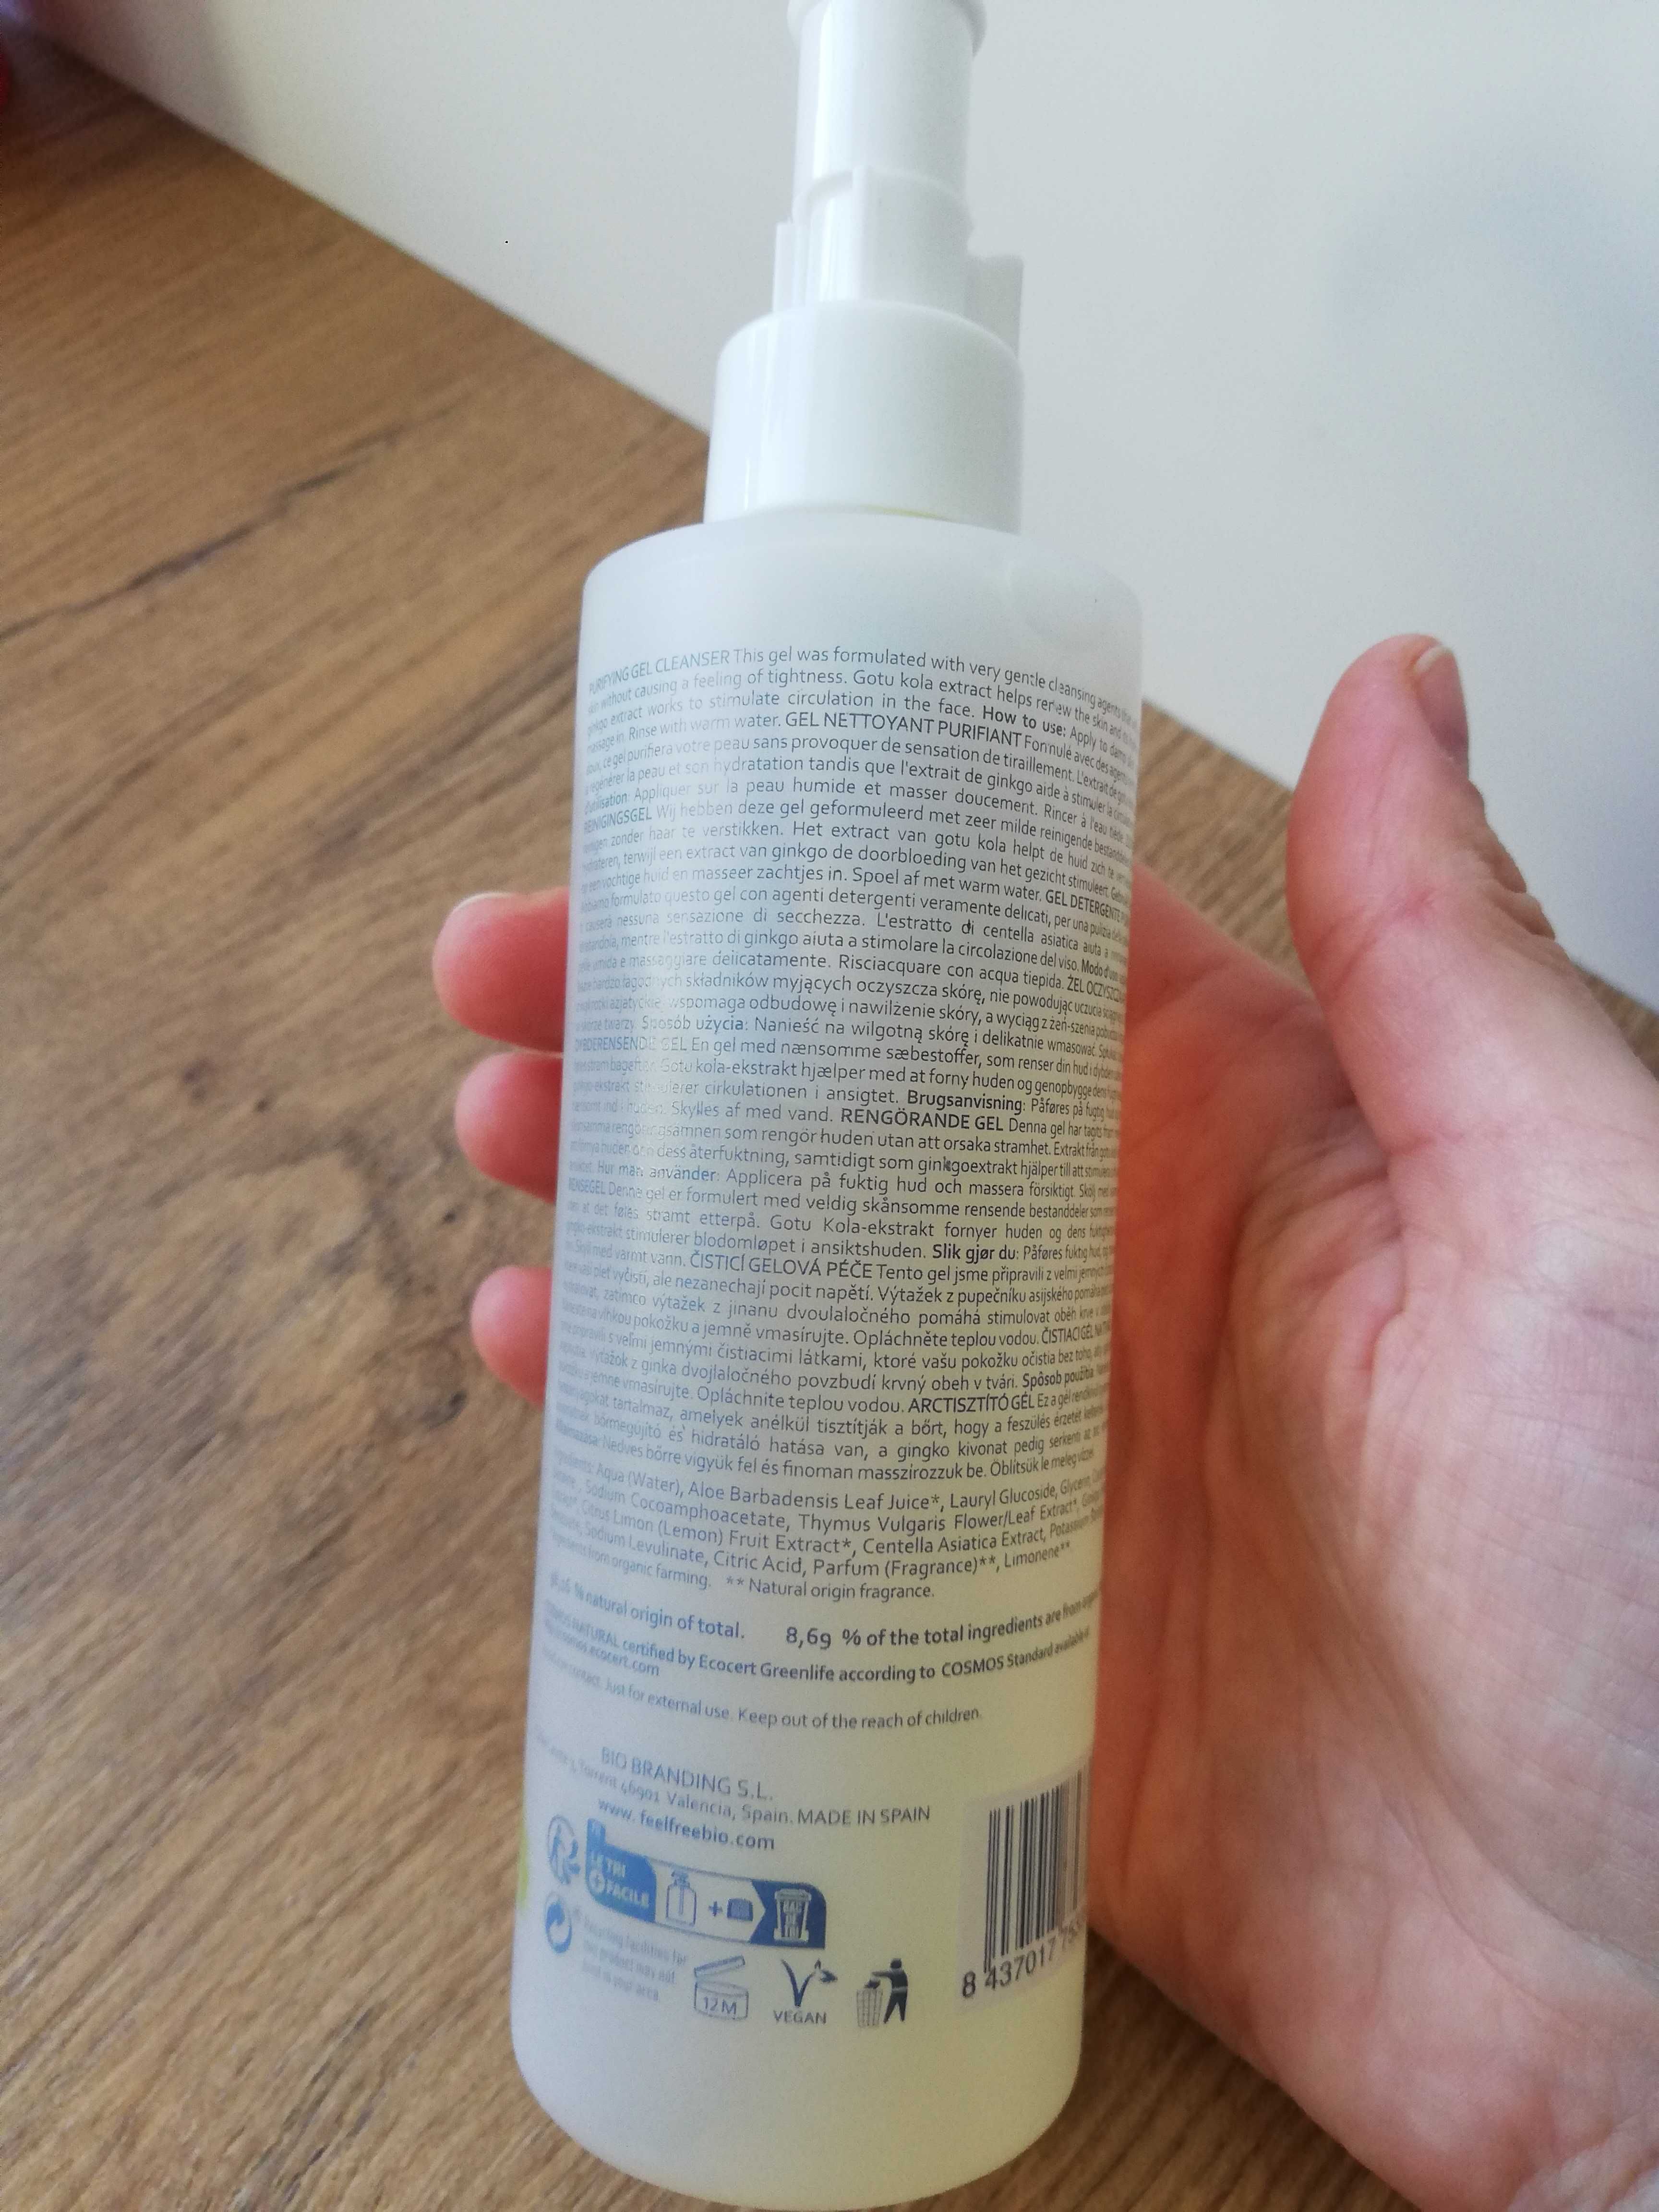 oczyszczający żel do mycia twarzy, gel cleanser Feel free 200 ml